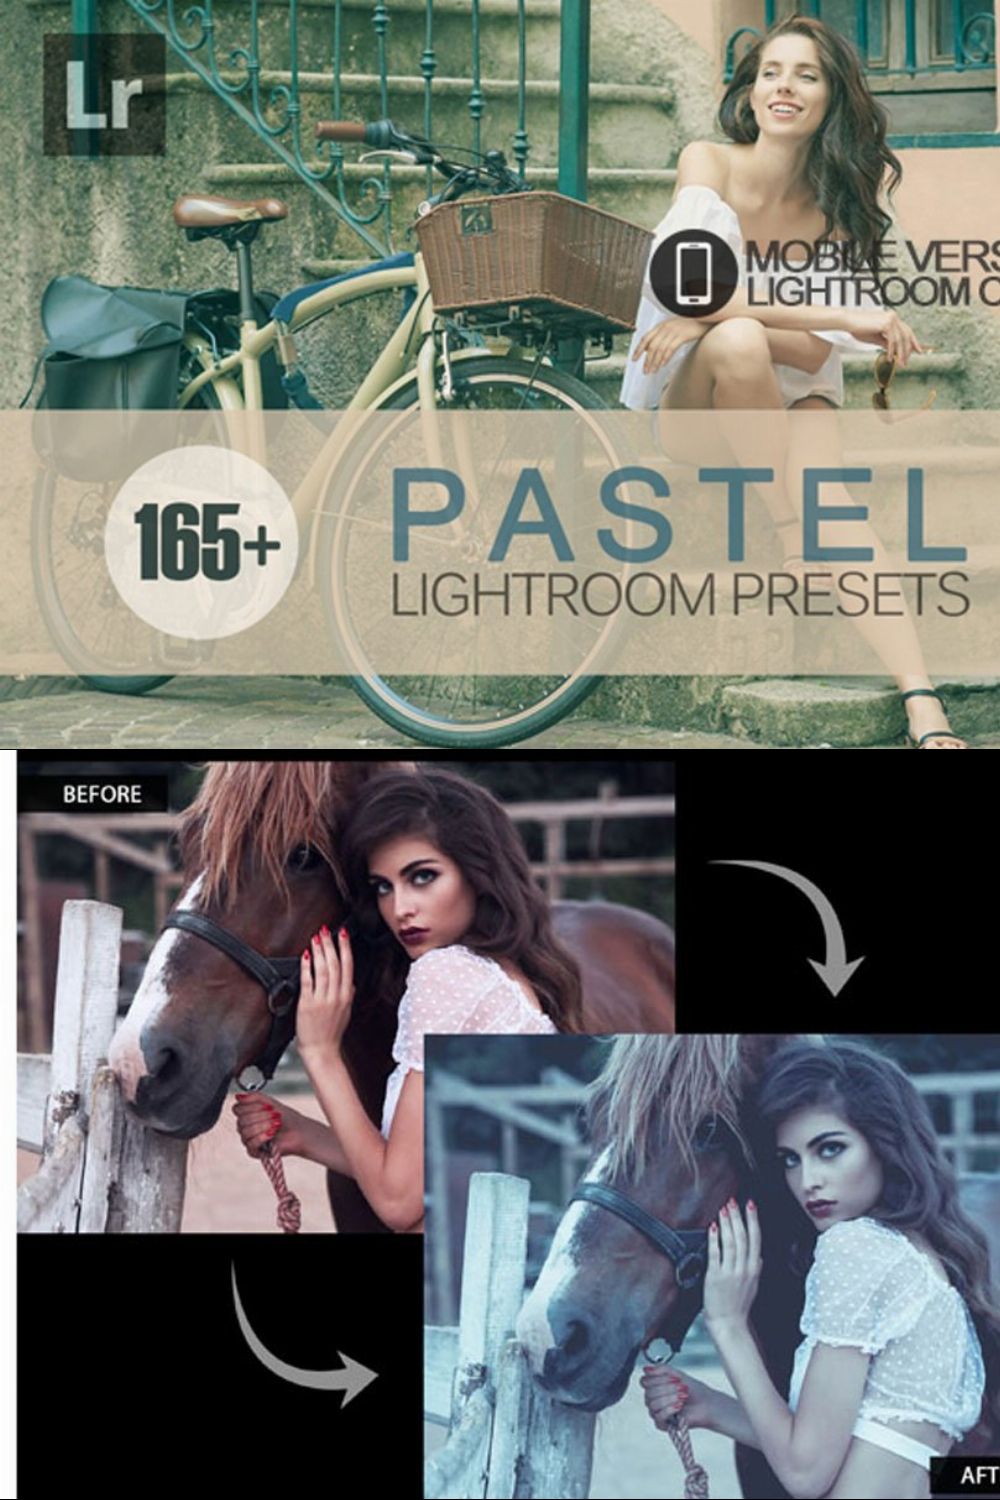 Pastel Lightroom Mobile Presets pinterest preview image.